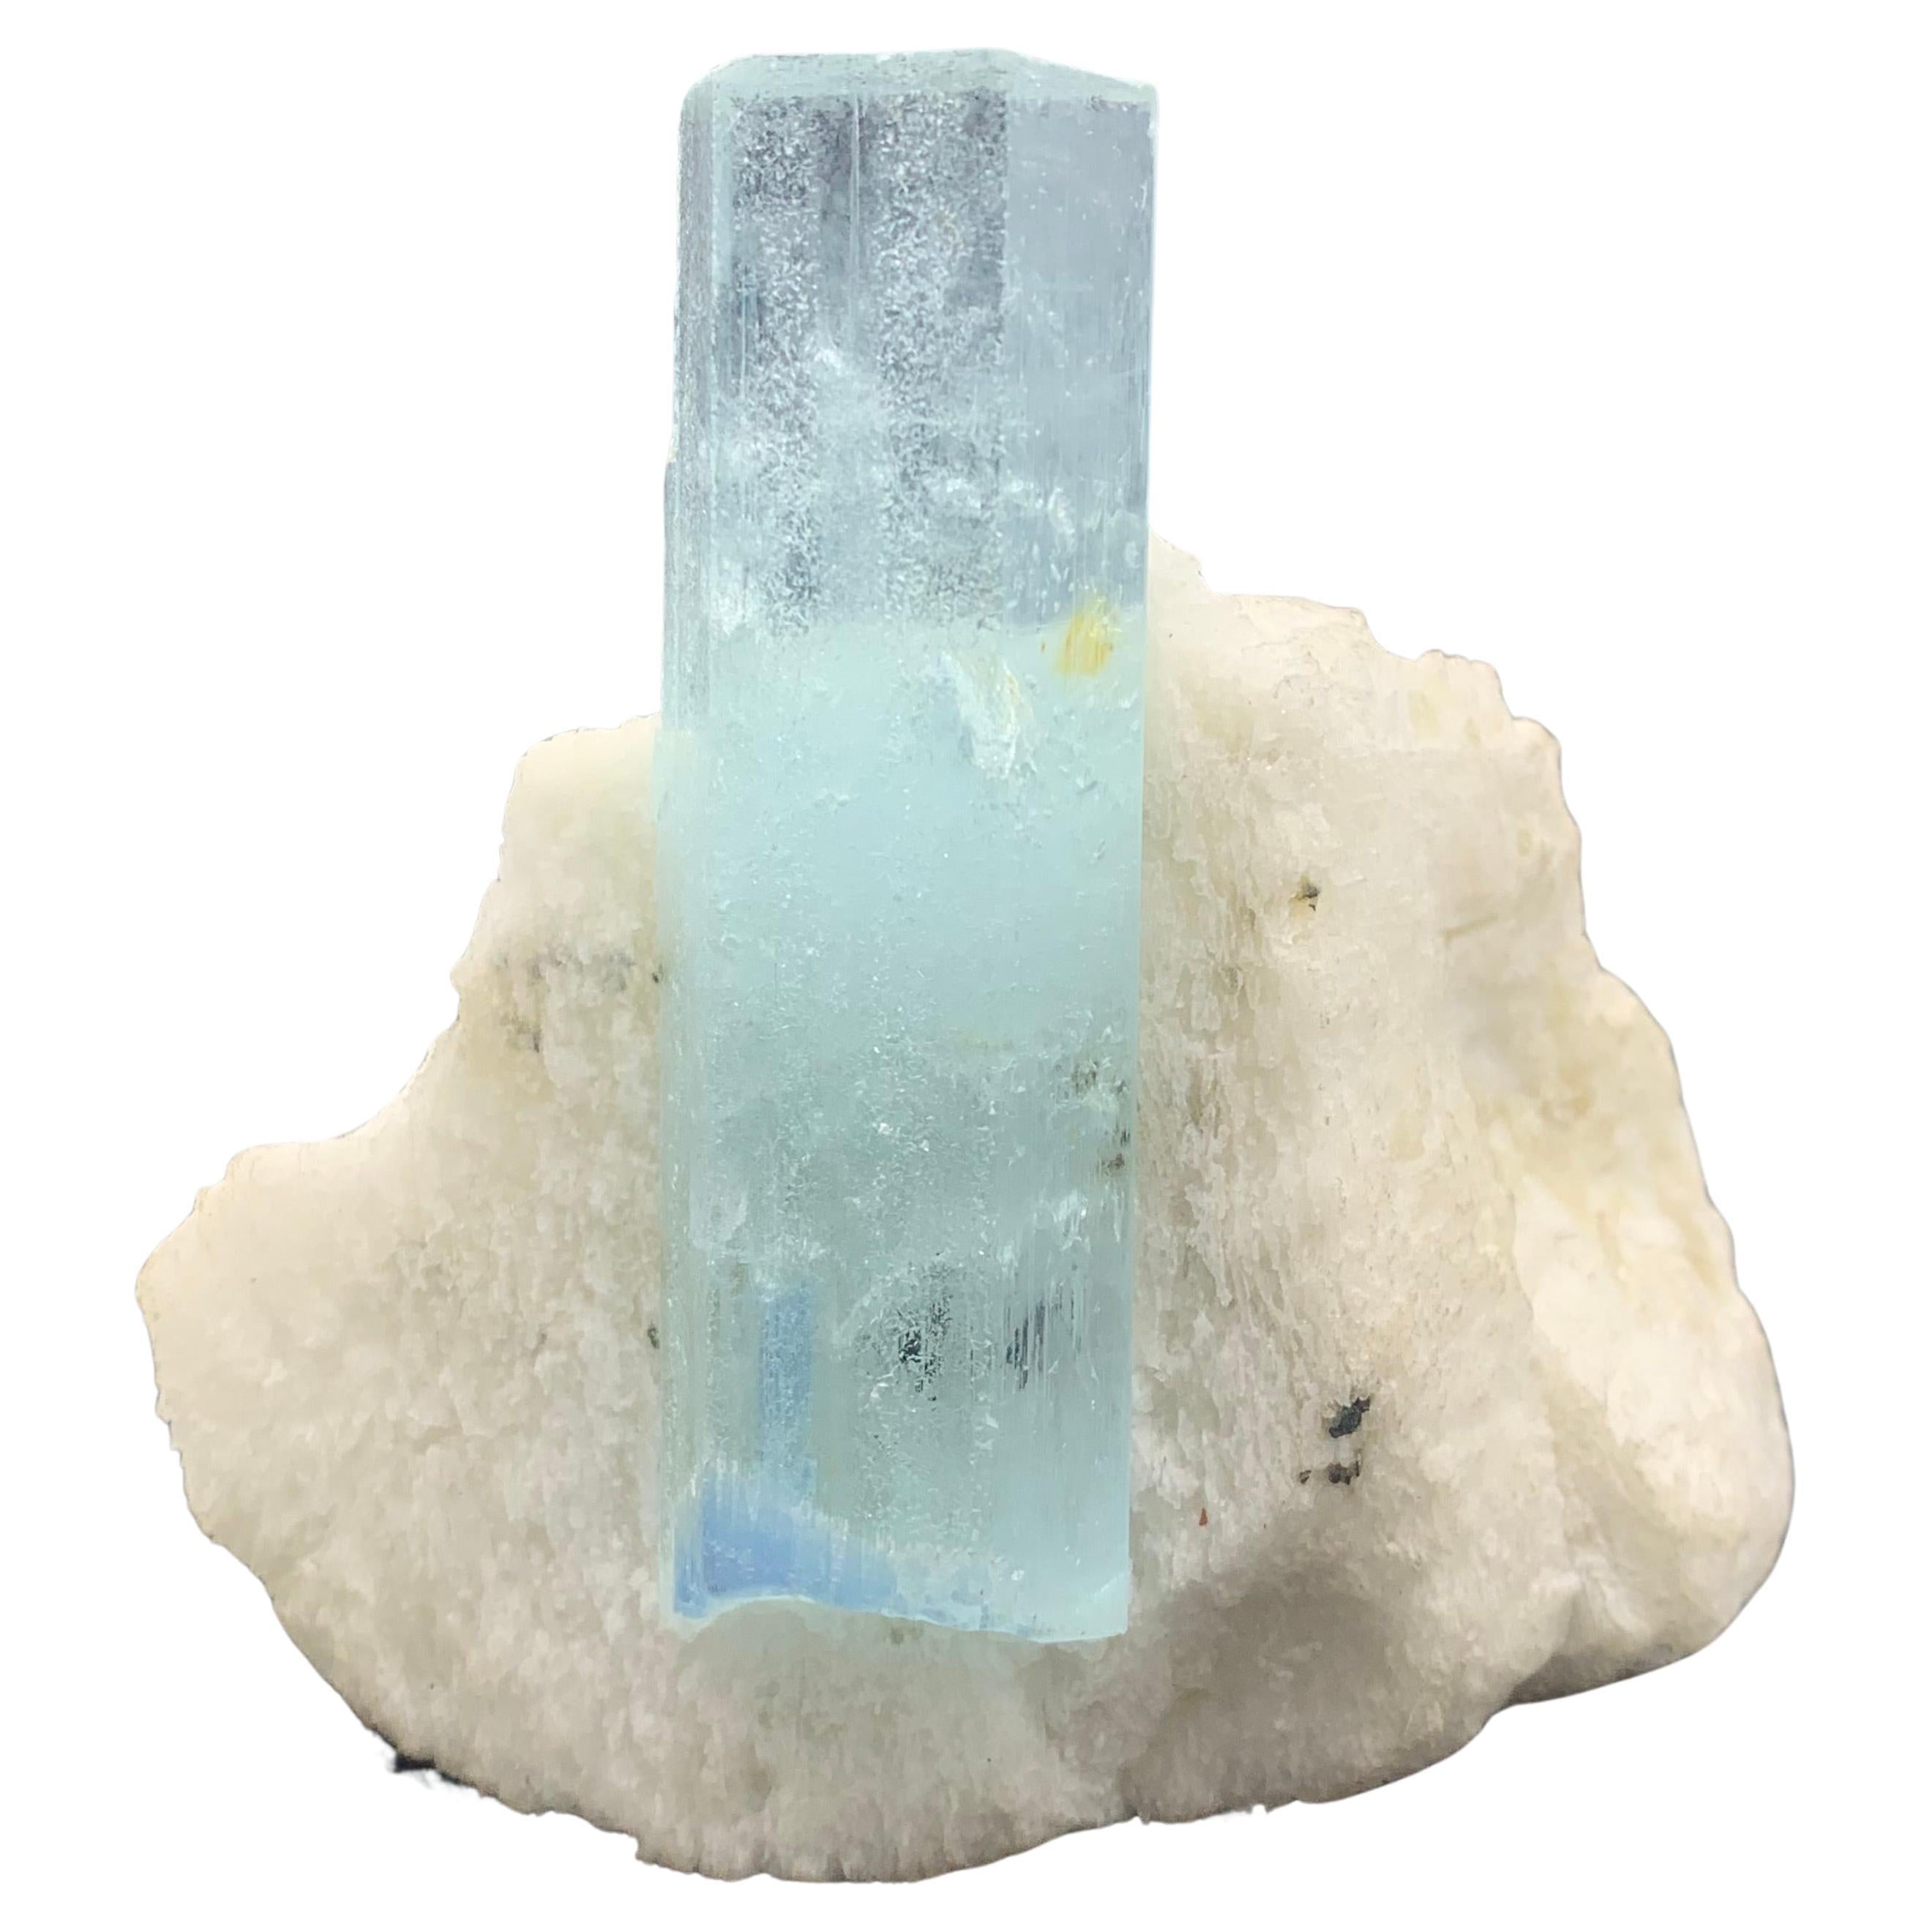 236.5 Gram Pretty Aquamarine Crystal On Feldspar From Shigar Valley, Pakistan  For Sale